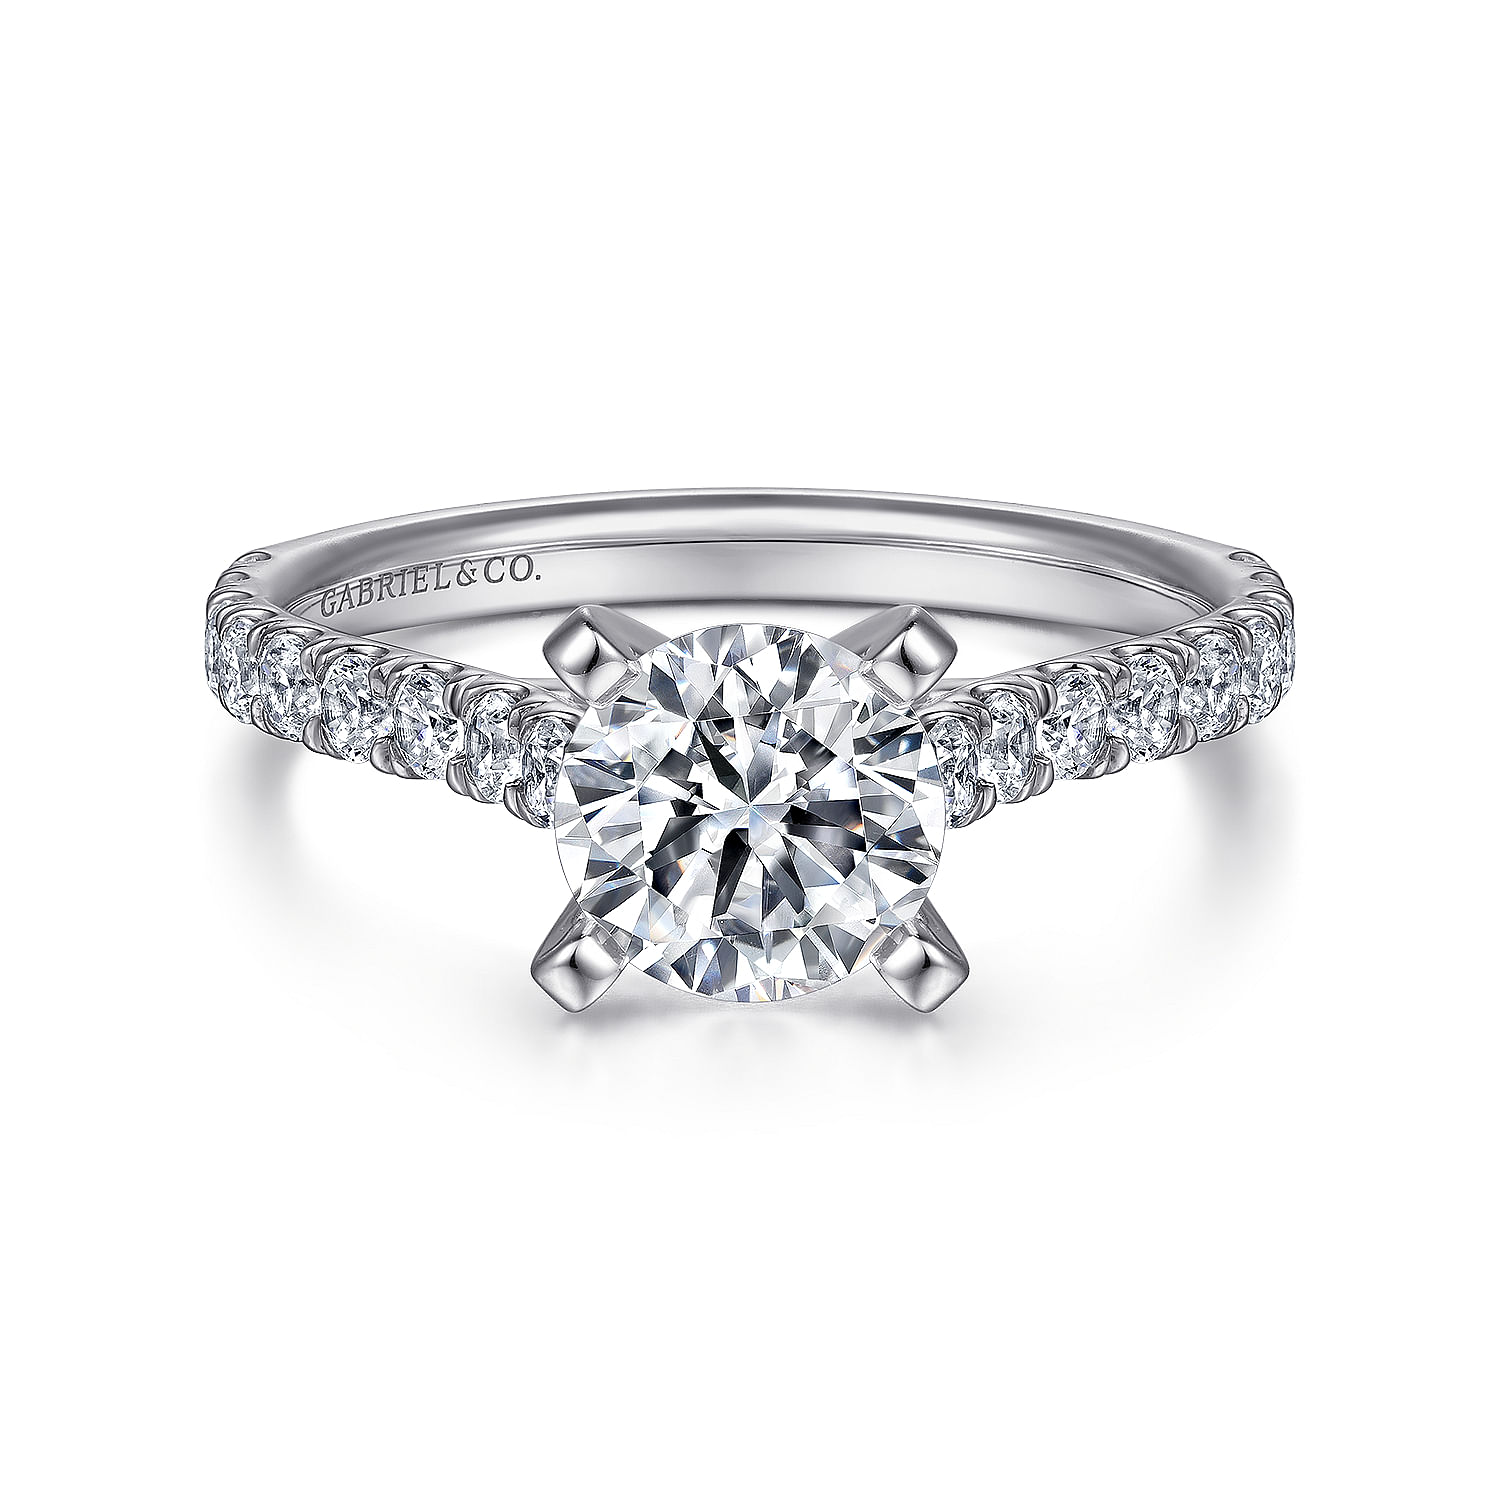 Erica - Platinum Round Diamond Engagement Ring